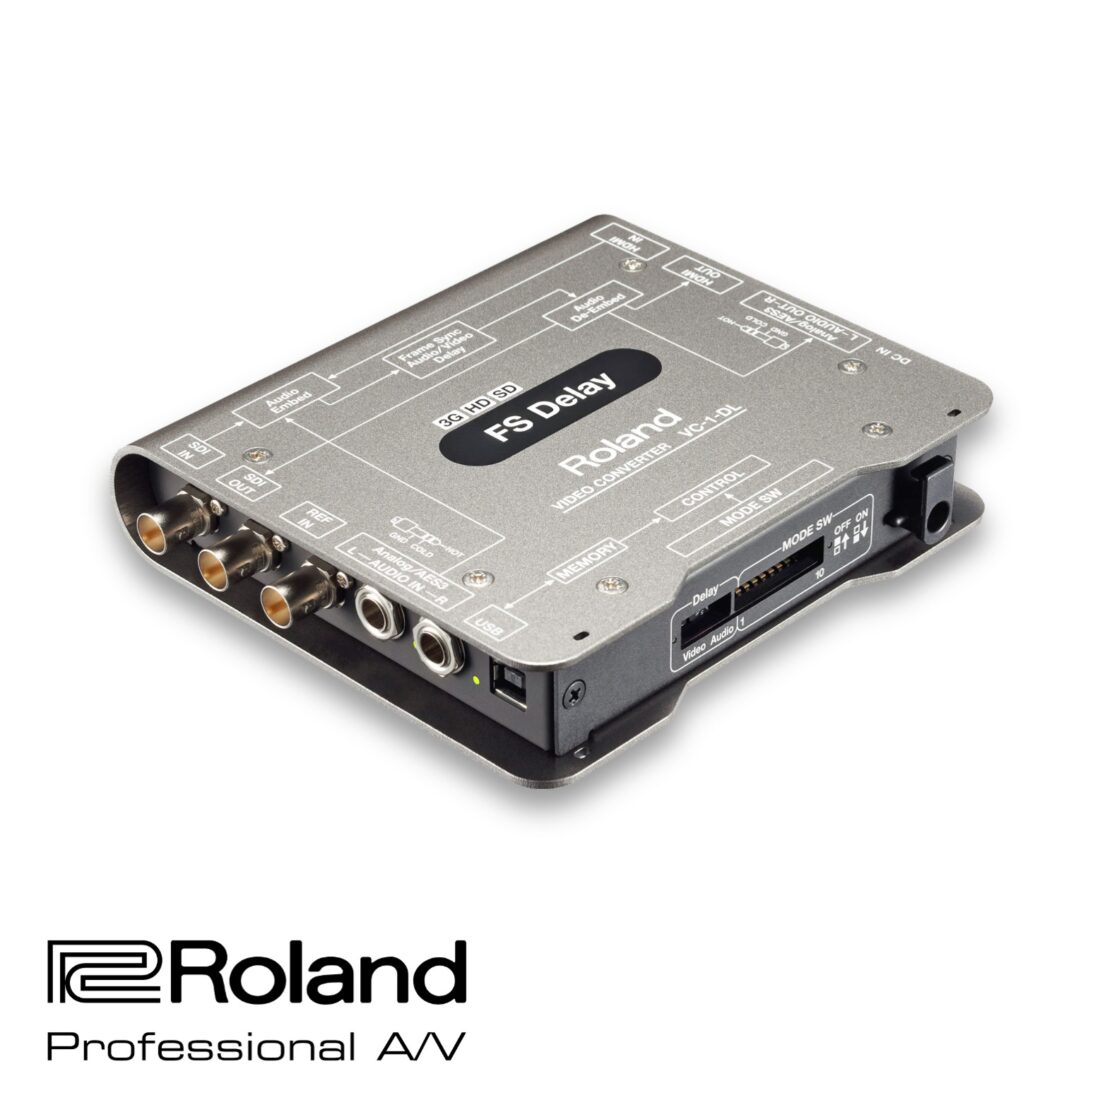 Roland VC-1-DL main